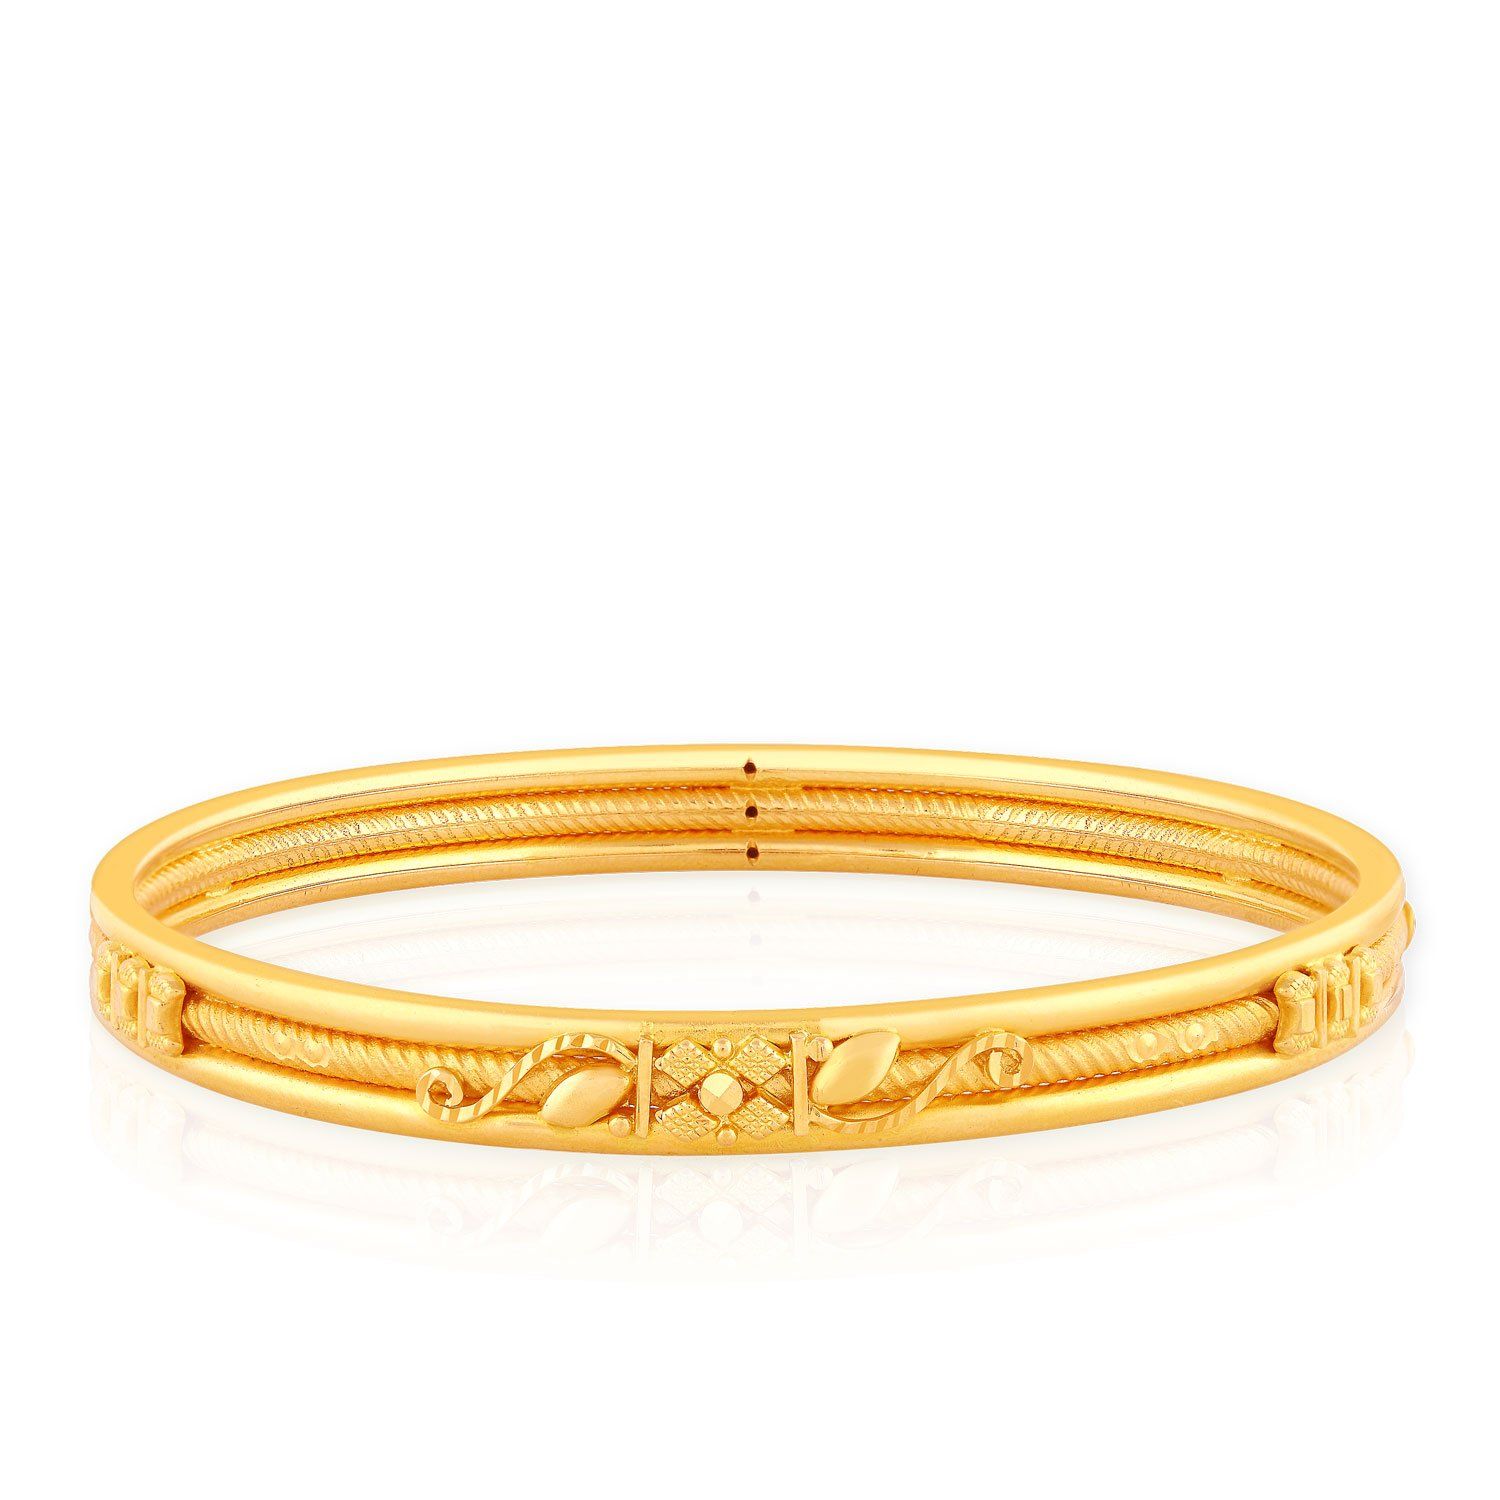 Malabar Gold and Diamonds 22k Yellow Gold Bangle | Jewelry ...